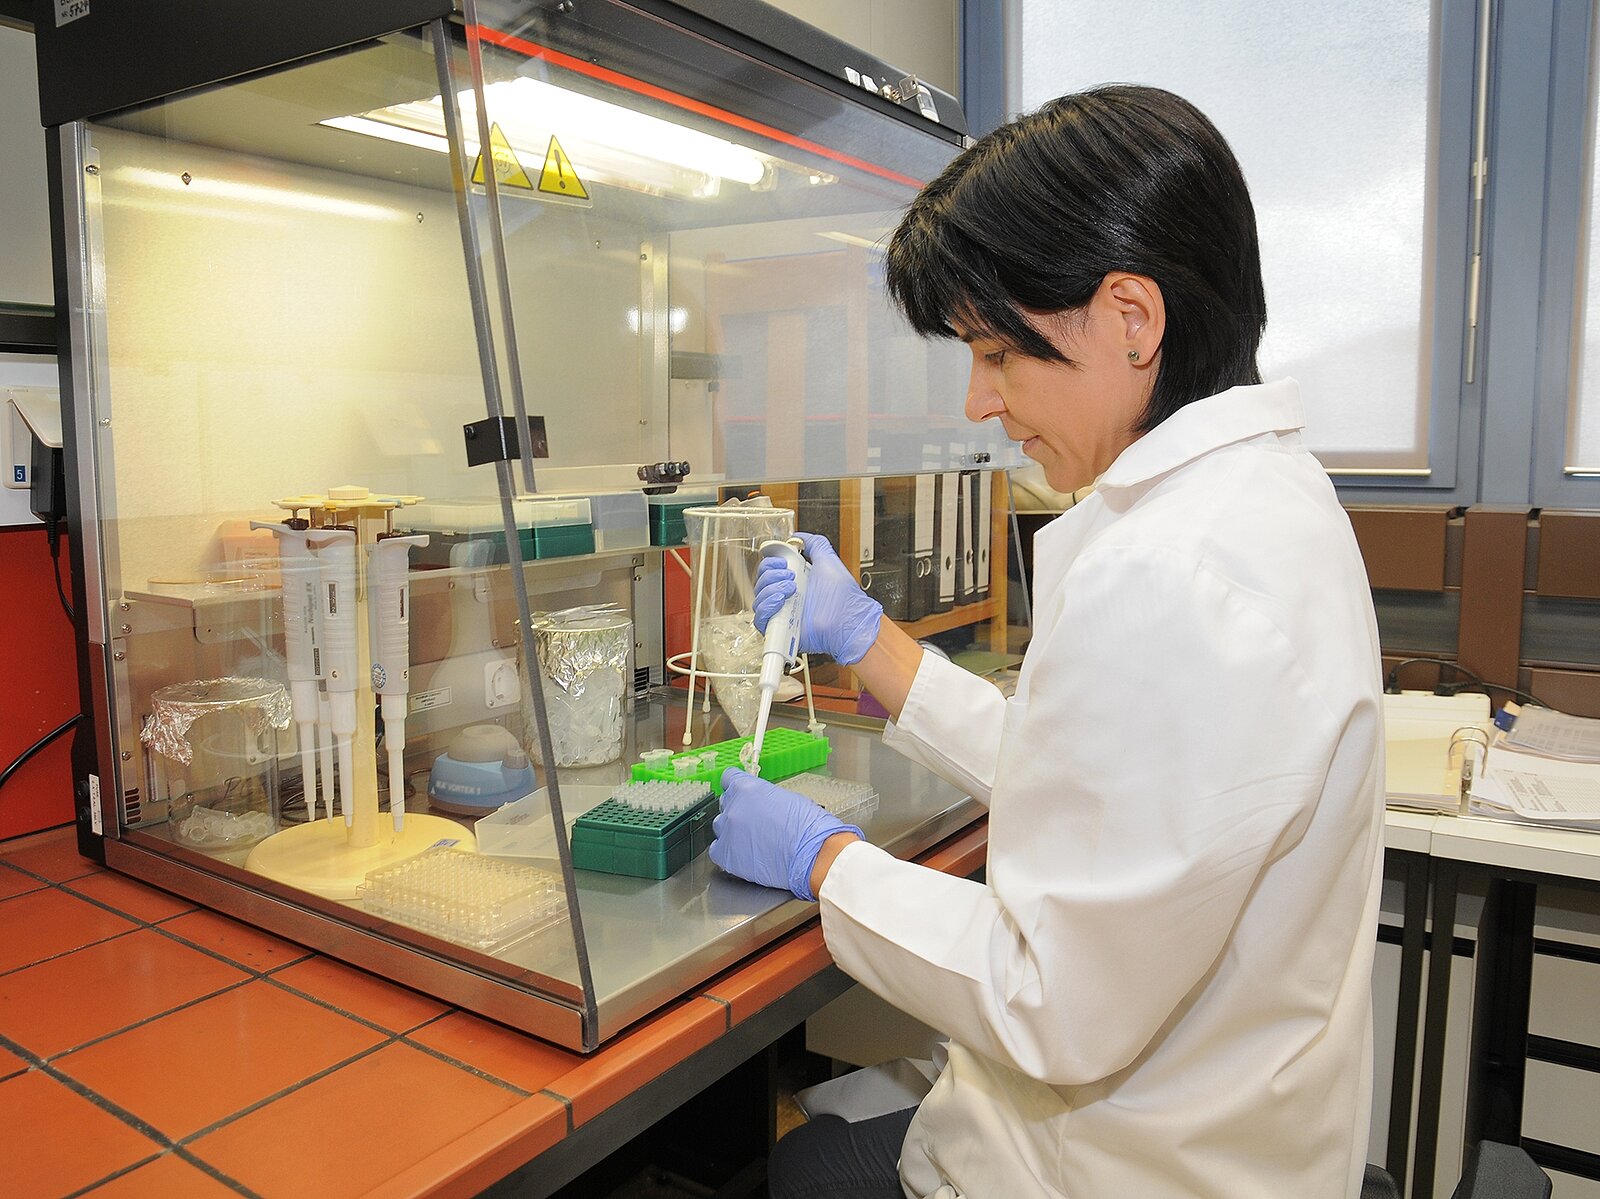 Eine Frau ermittelt gentechnische Veränderungen in einer Maisprobe durch DNA-Analyse.